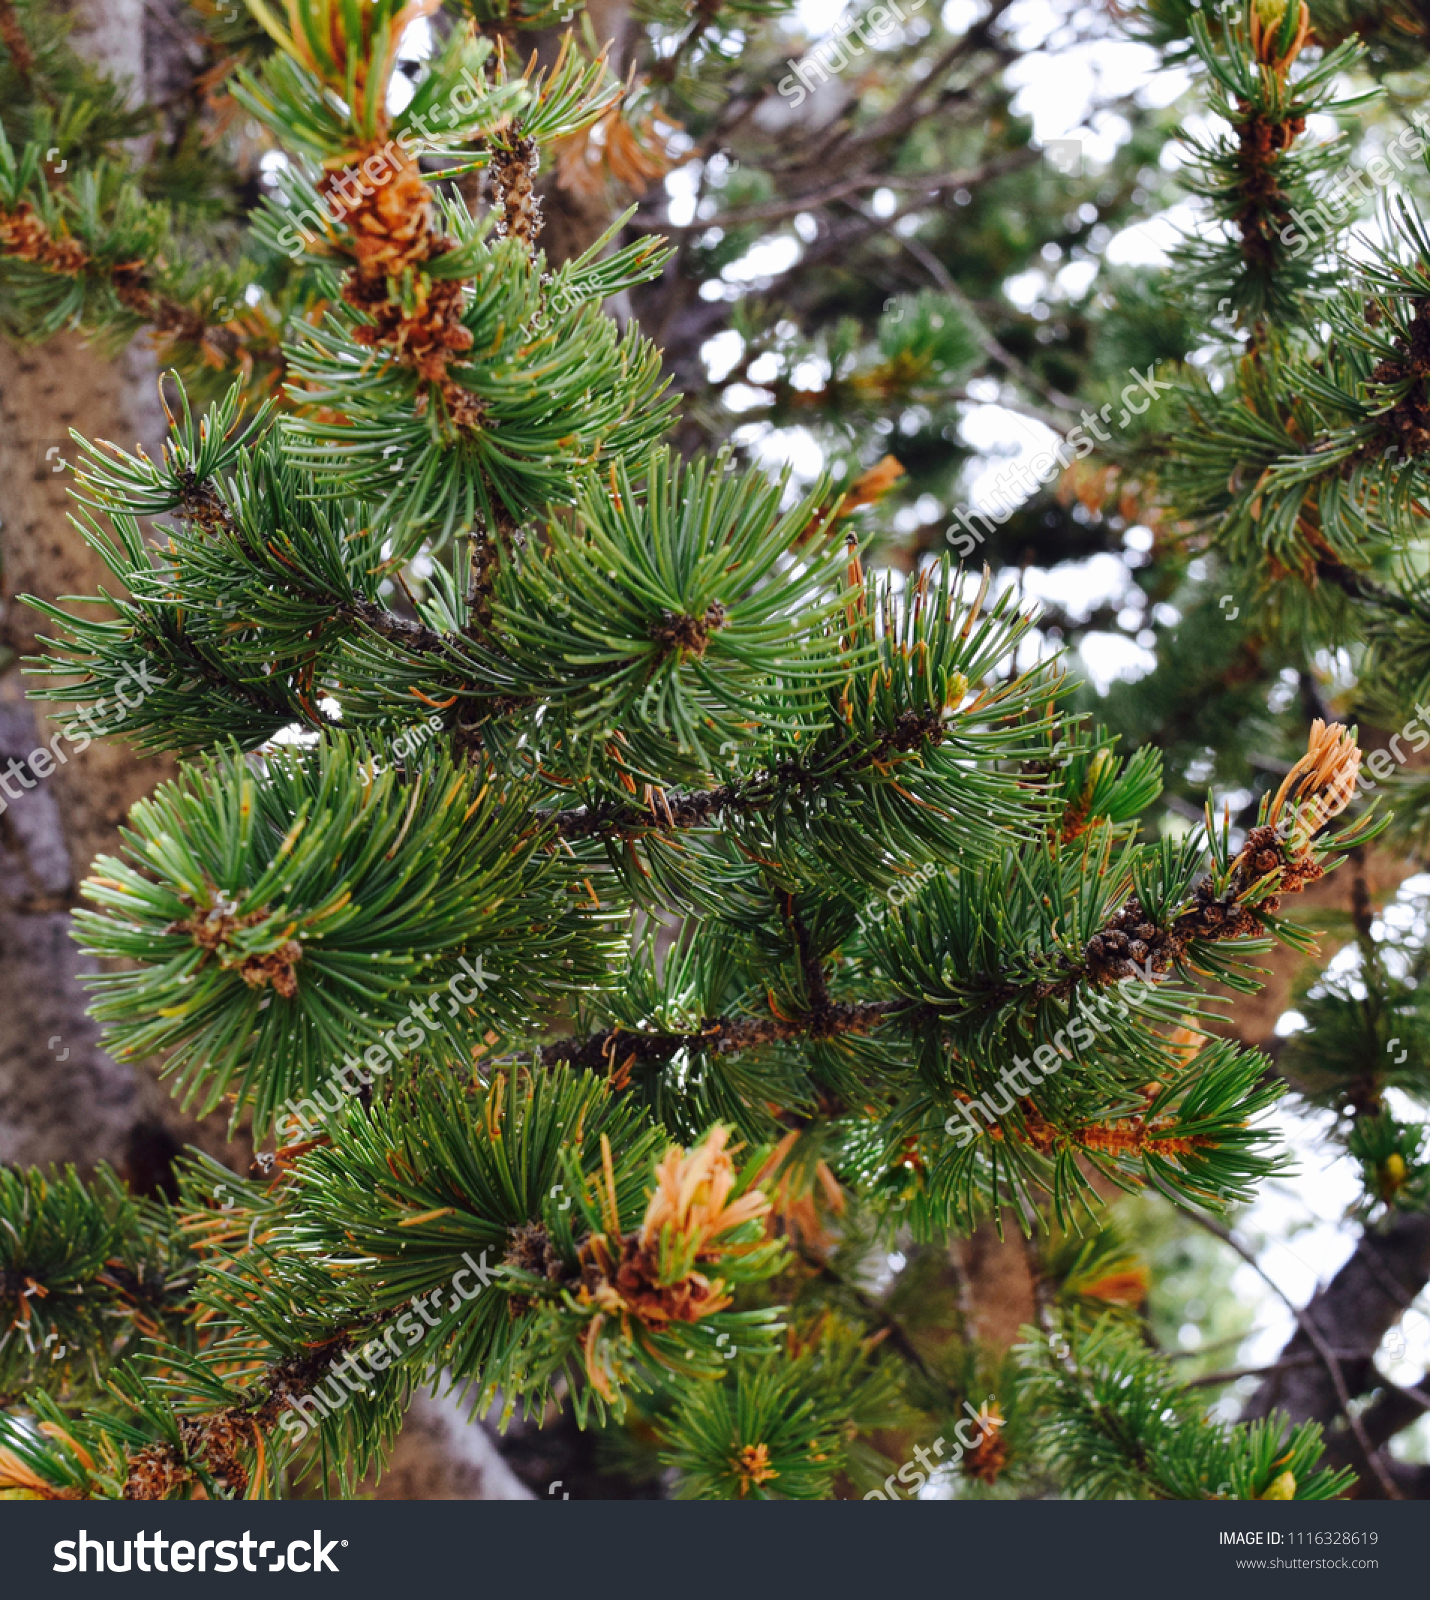 Pine Needles and Pine Cones #1116328619